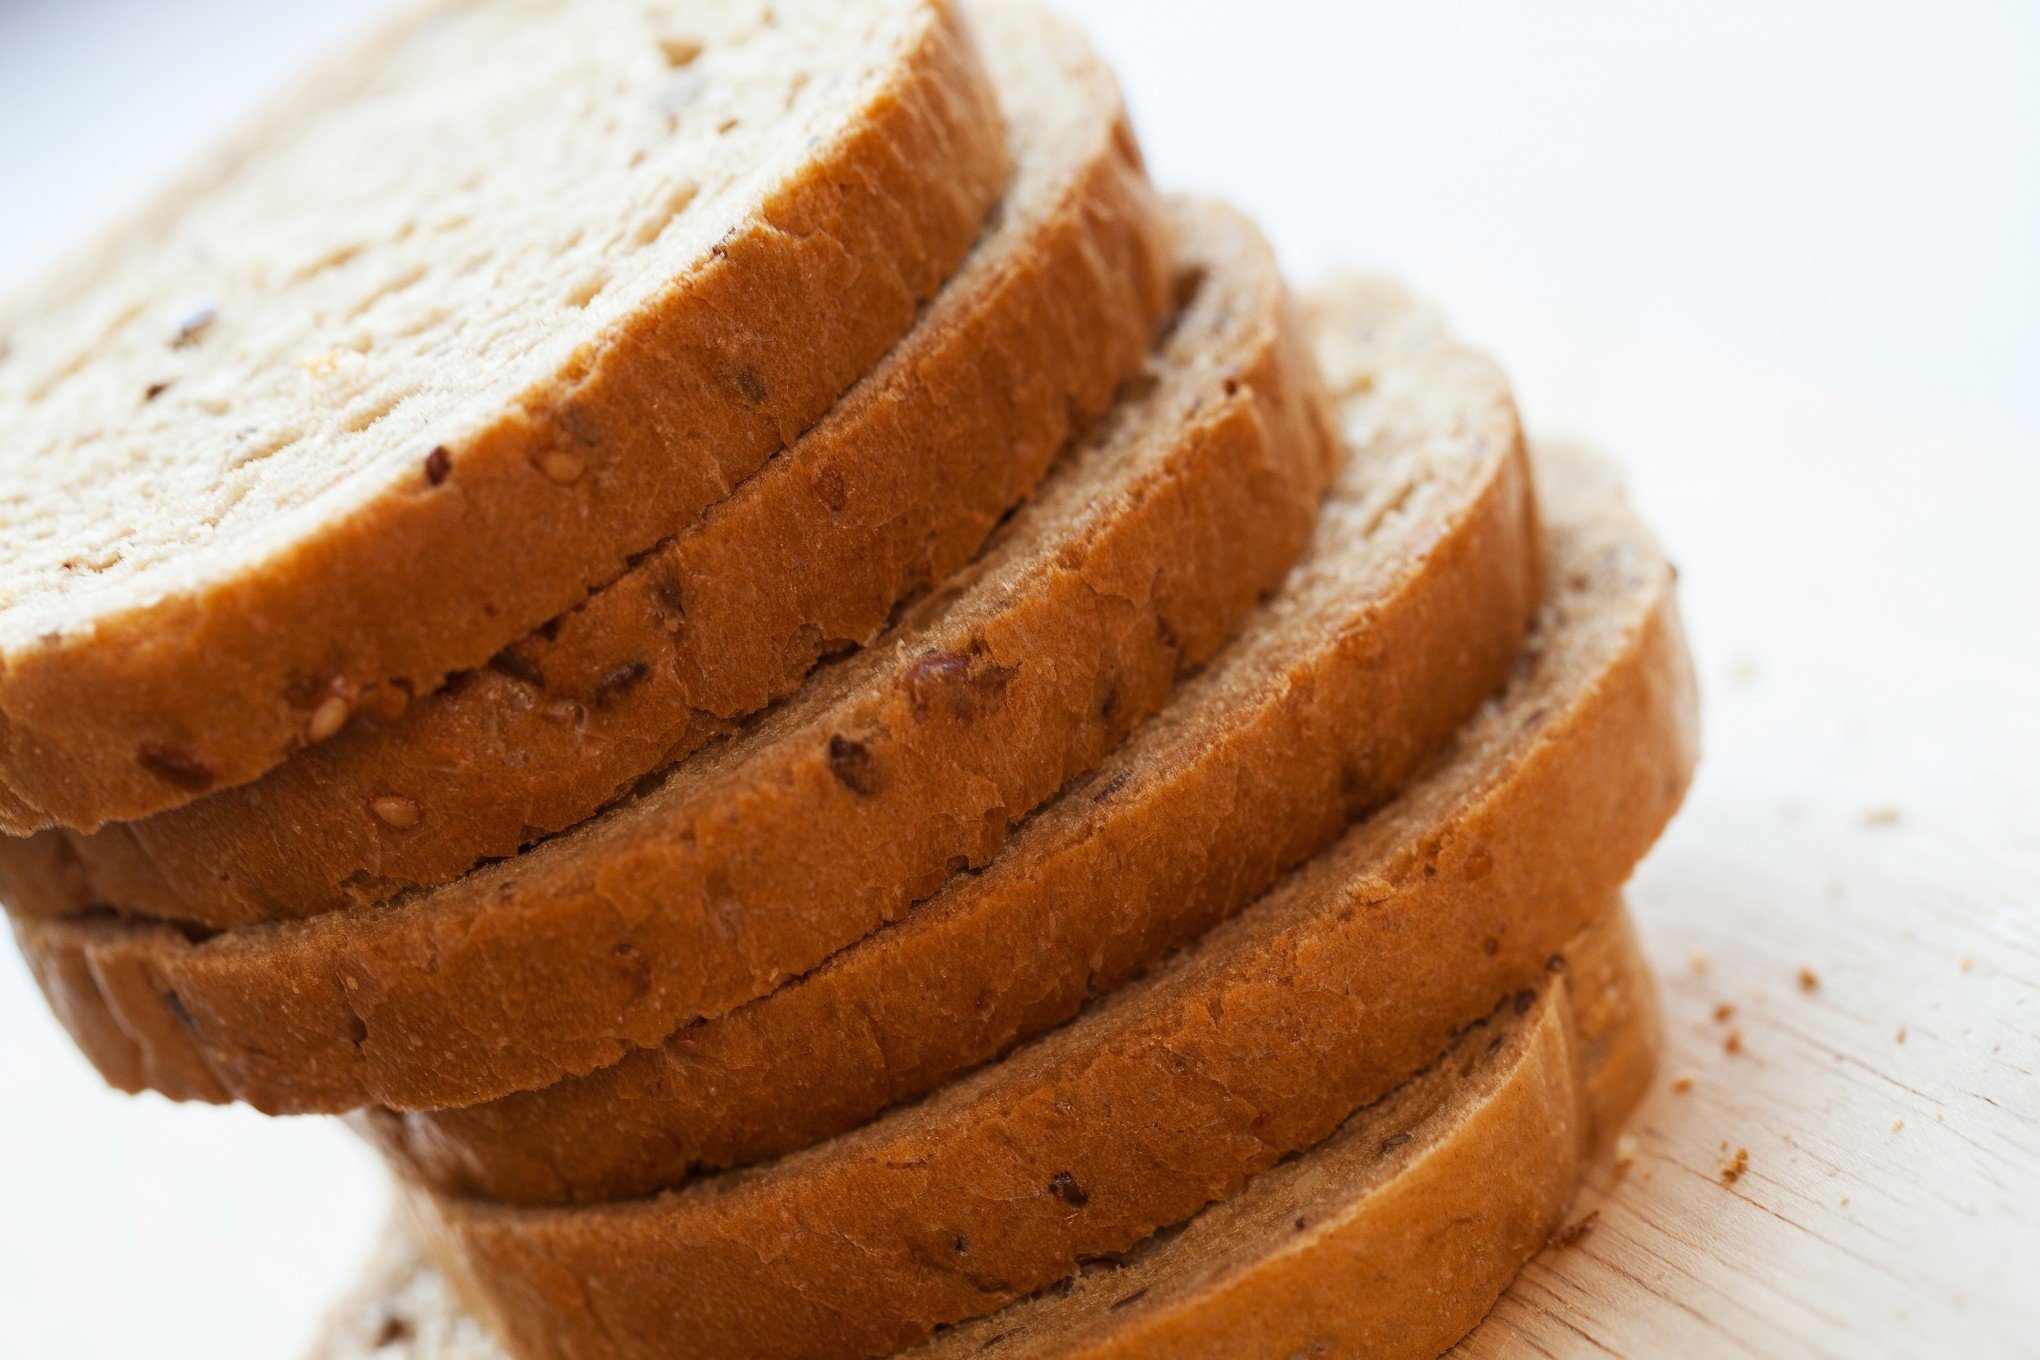 Teor alcoólico em pães de forma é mesmo elevado? Indústria alimentícia aponta falhas em estudo; entenda